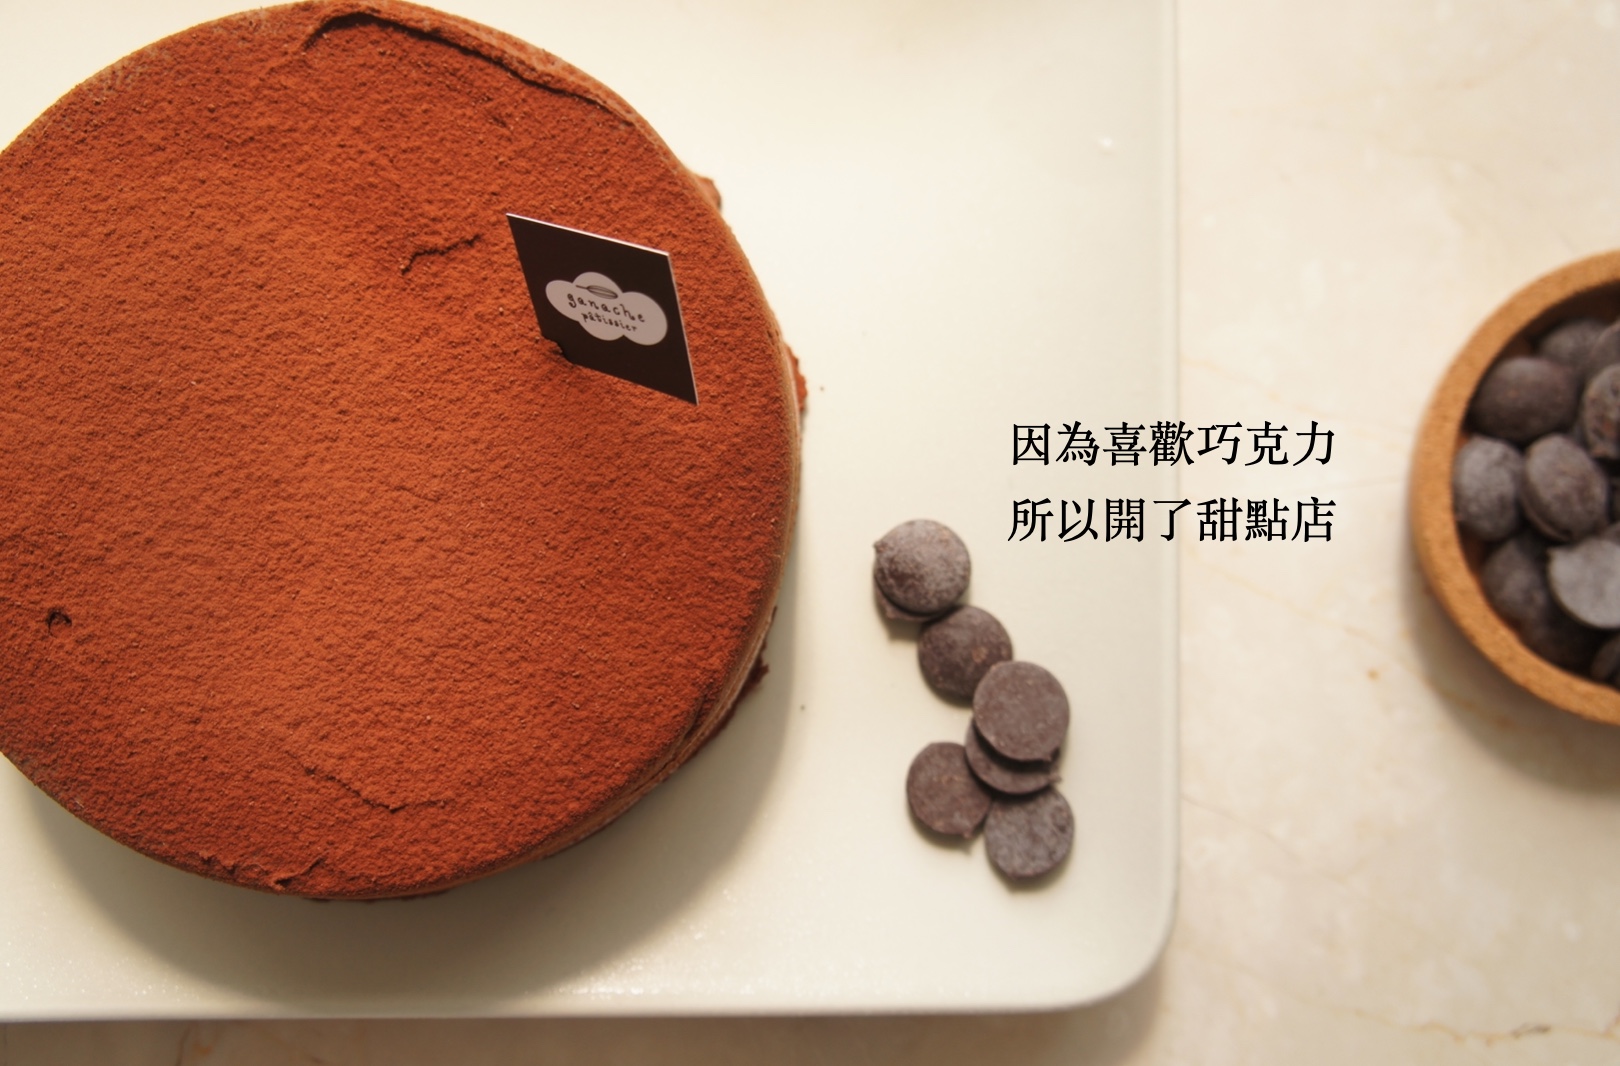 生巧克力蛋糕系列 - ganachoco格那修蛋糕 